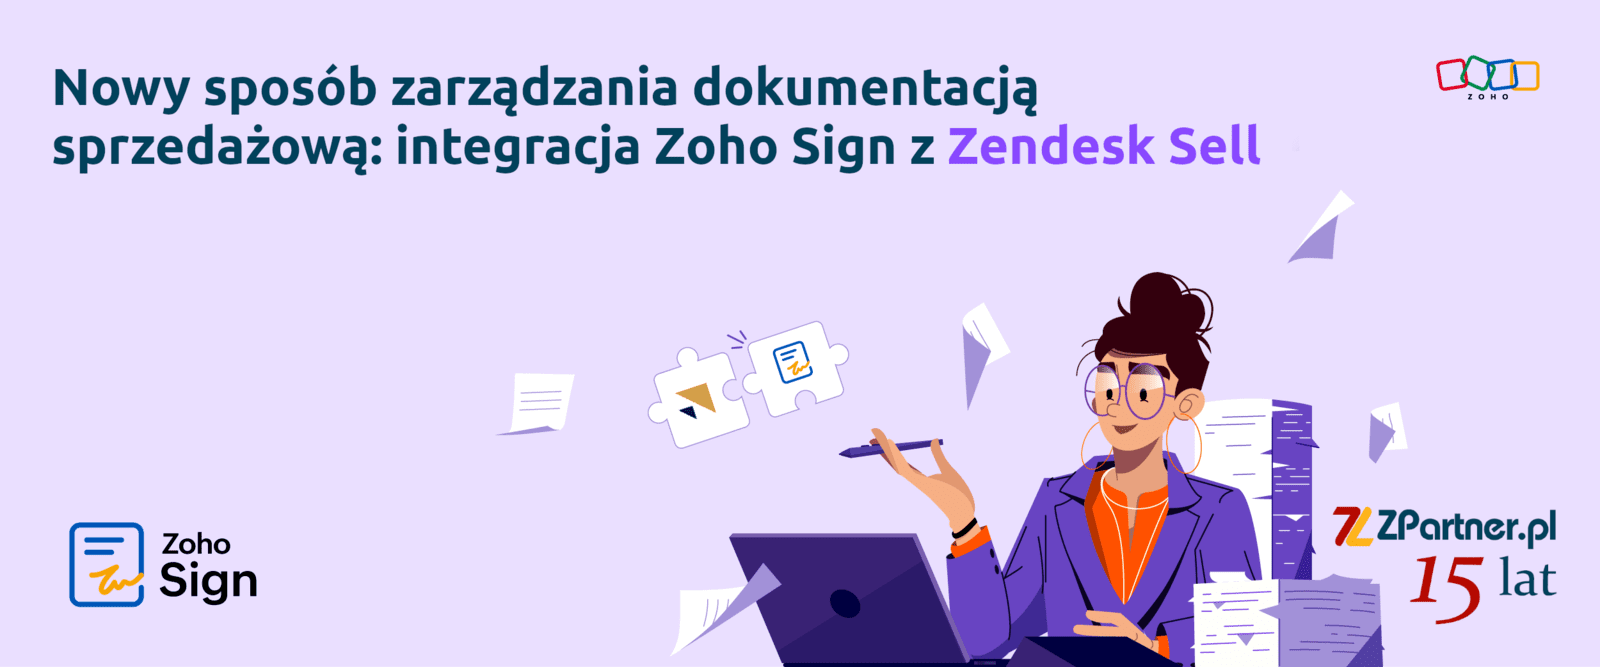 Nowy sposób zarządzania dokumentacją sprzedażową: integracja Zoho Sign z Zendesk Sell